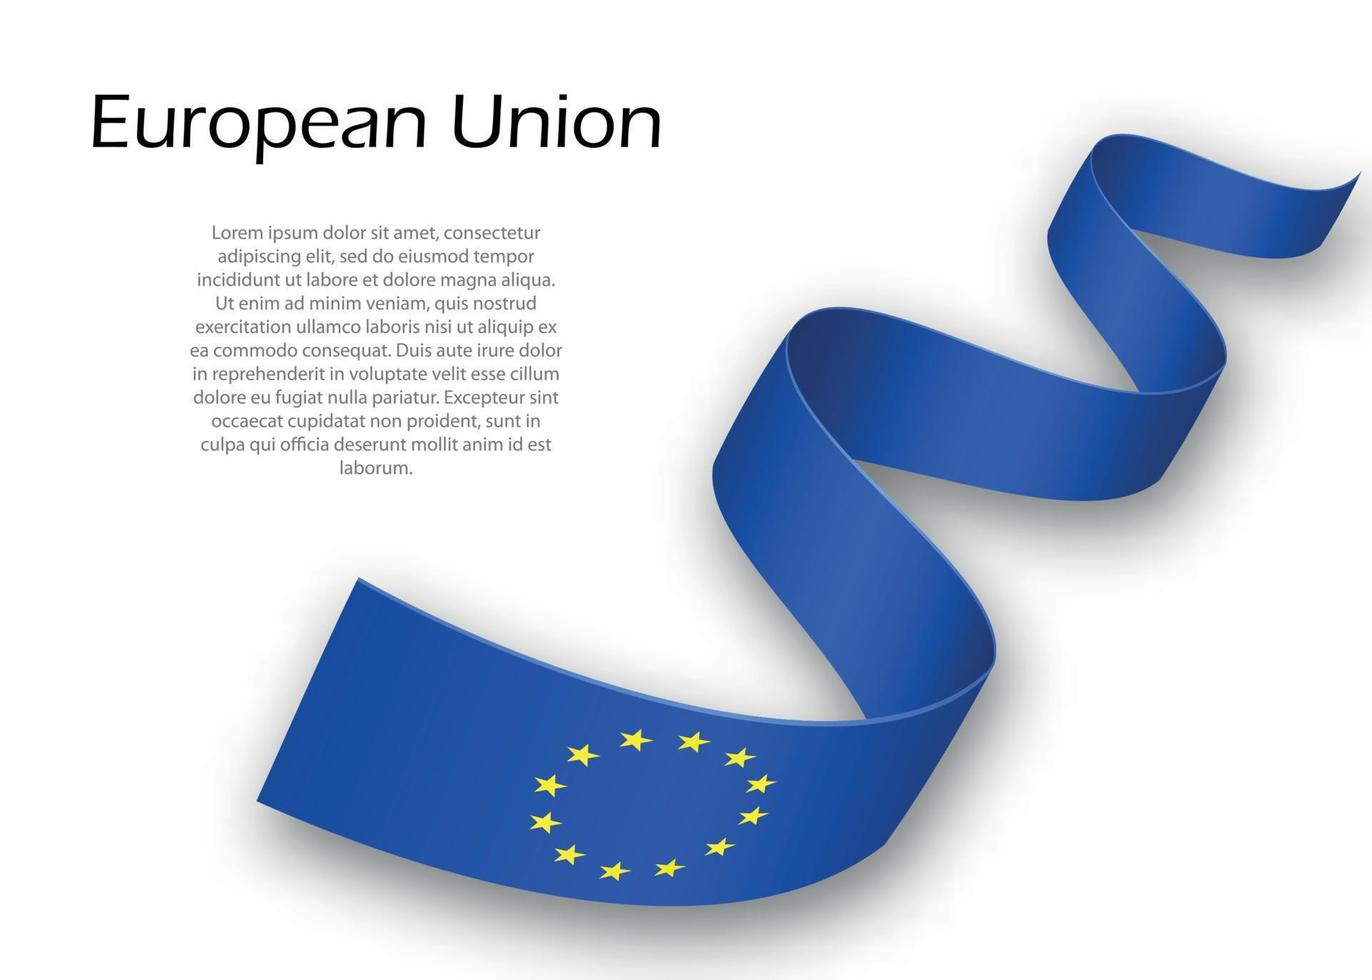 sventolando il nastro o lo striscione con la bandiera dell'unione europea vettore